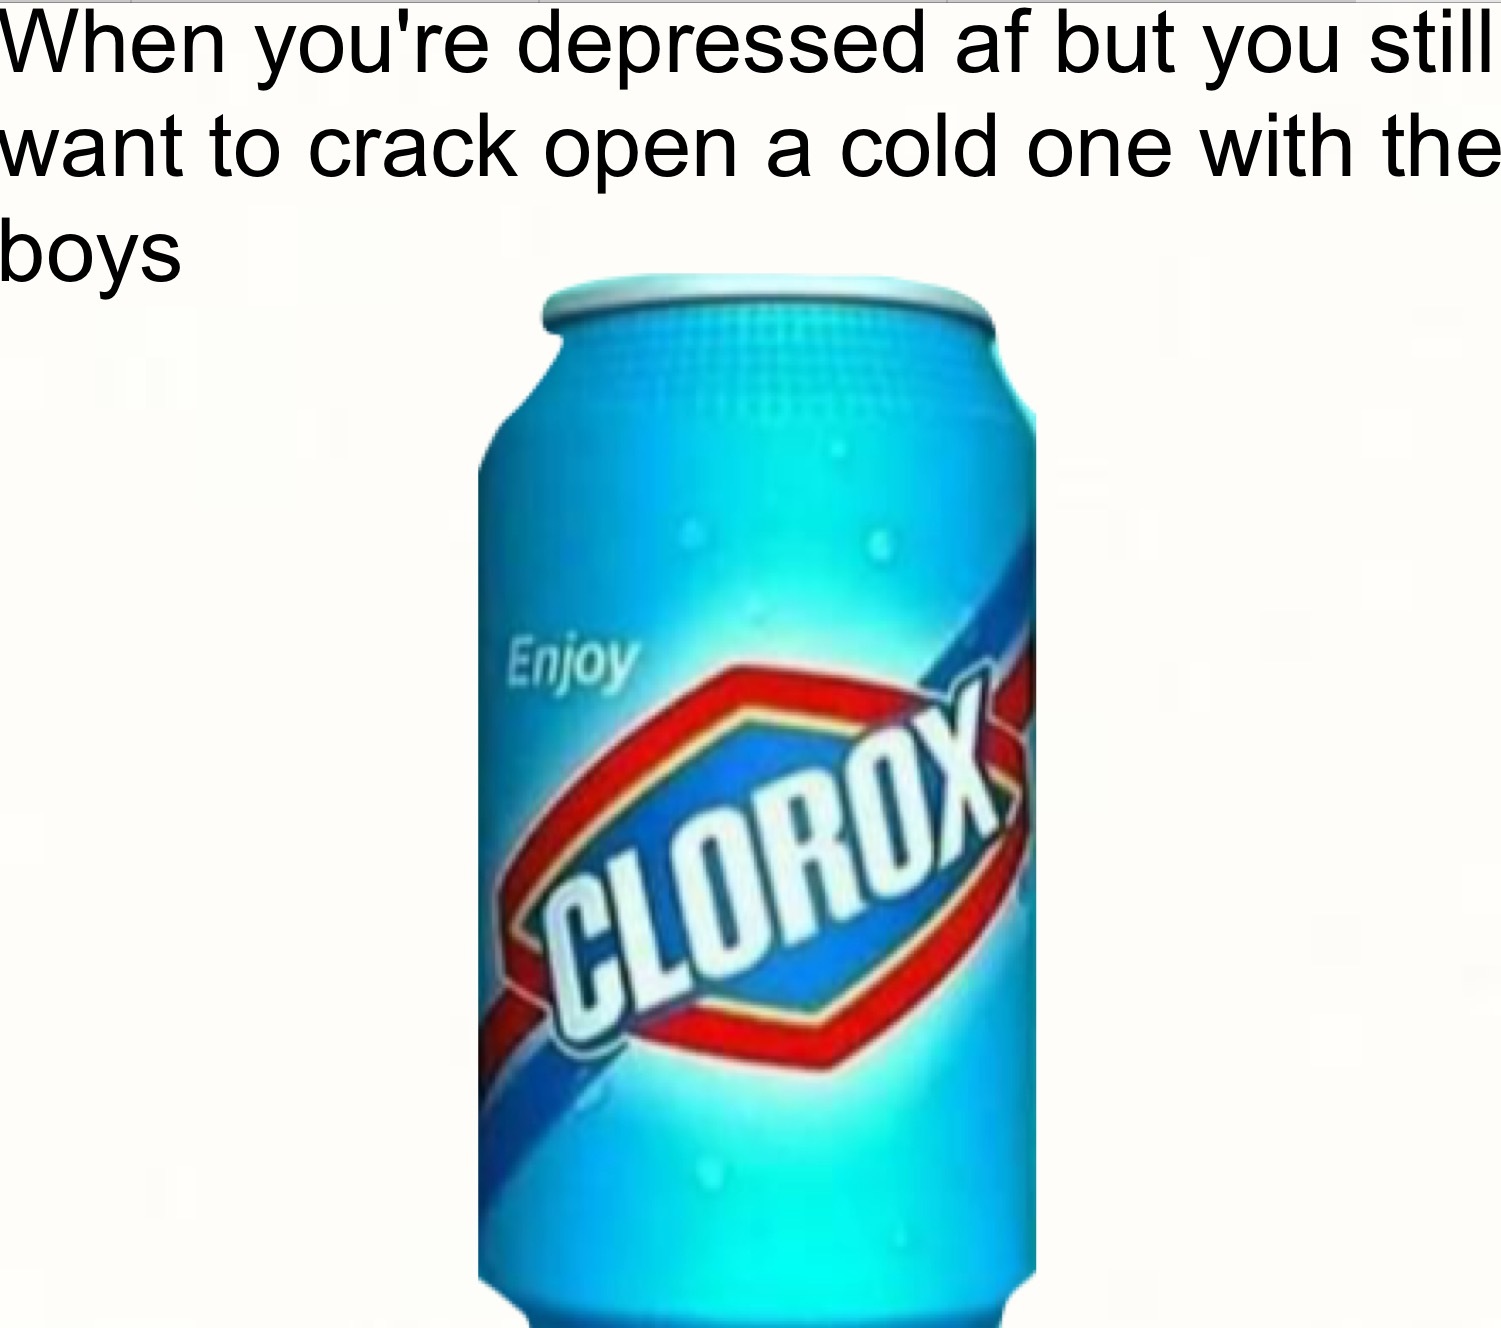 Crack open a clorox - meme